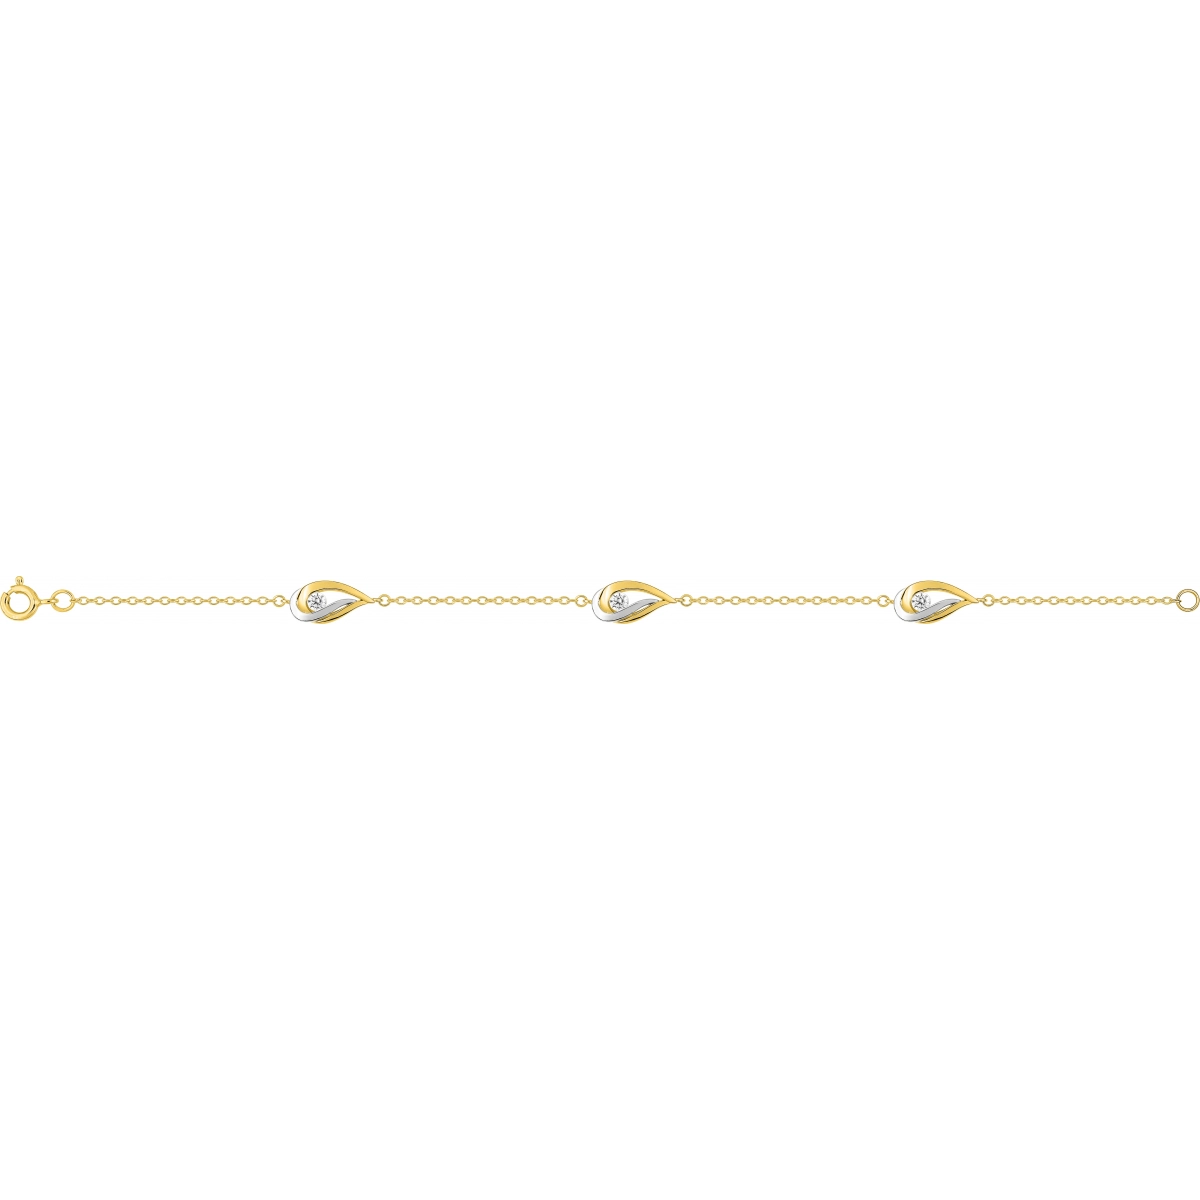 Bracelet 18cm w. cz gold plated Brass 2TG  Lua Blanca  BSBL43Z18.0